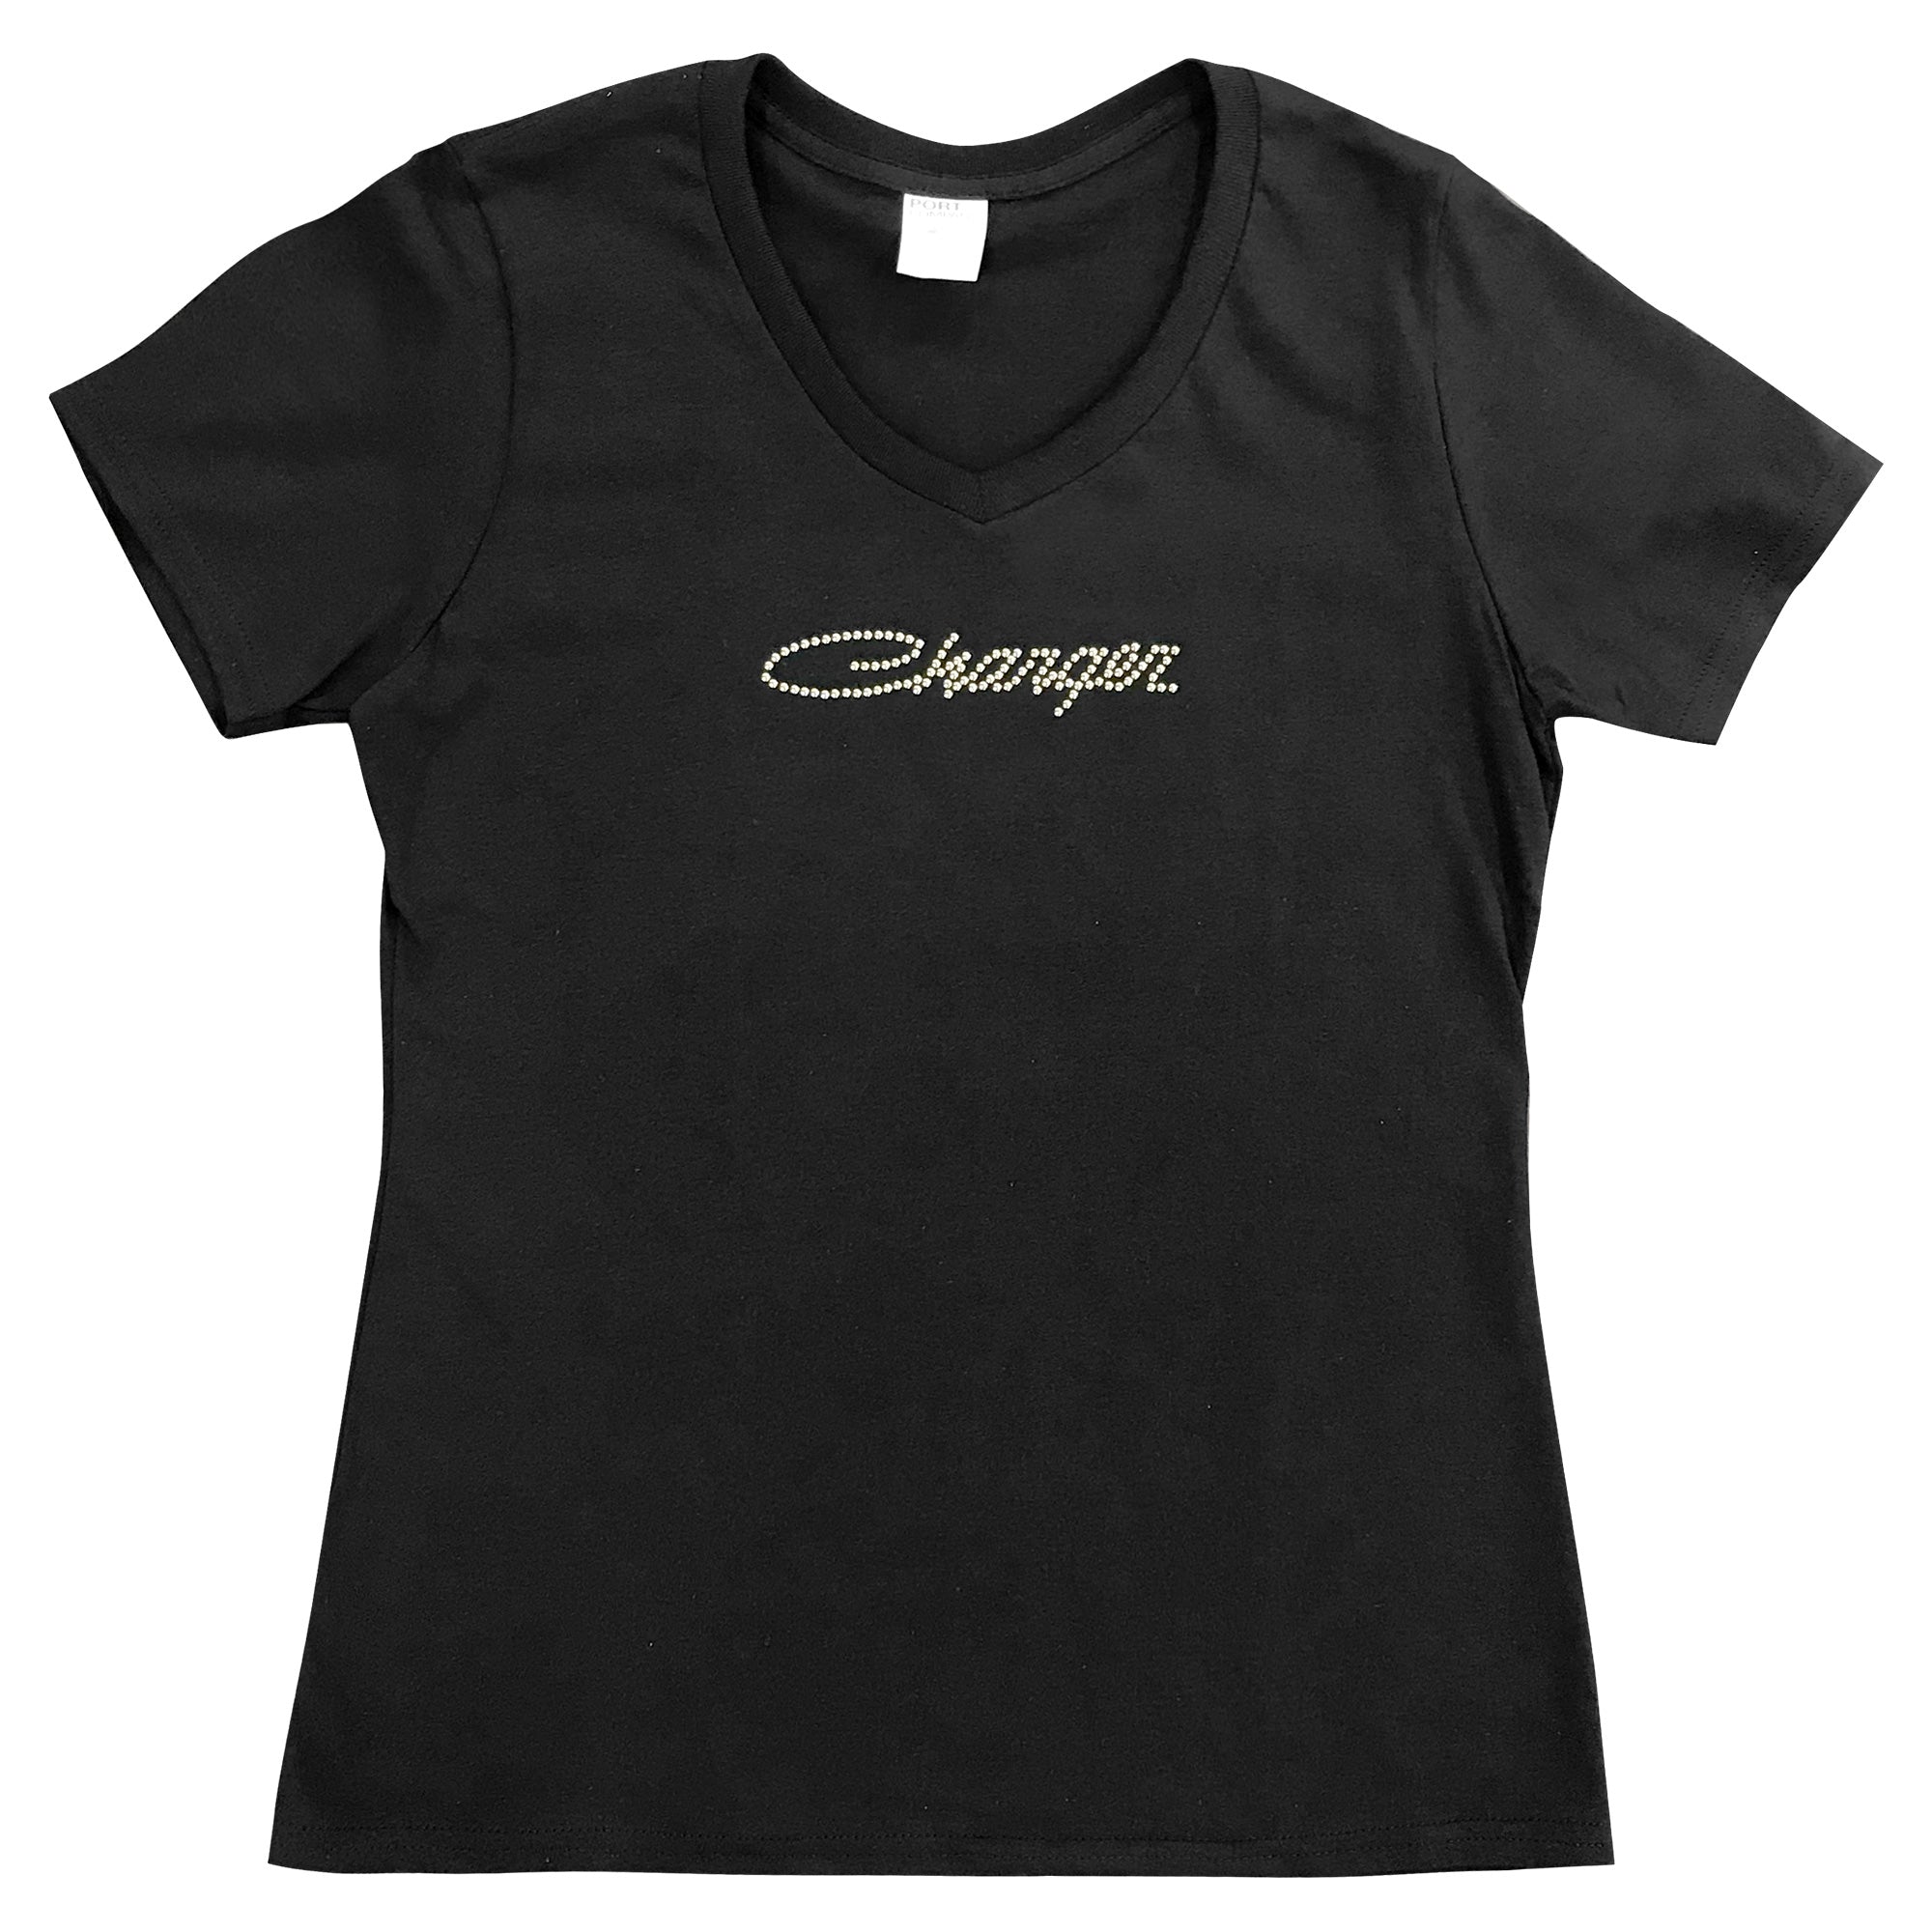 Charger Women's T-Shirt